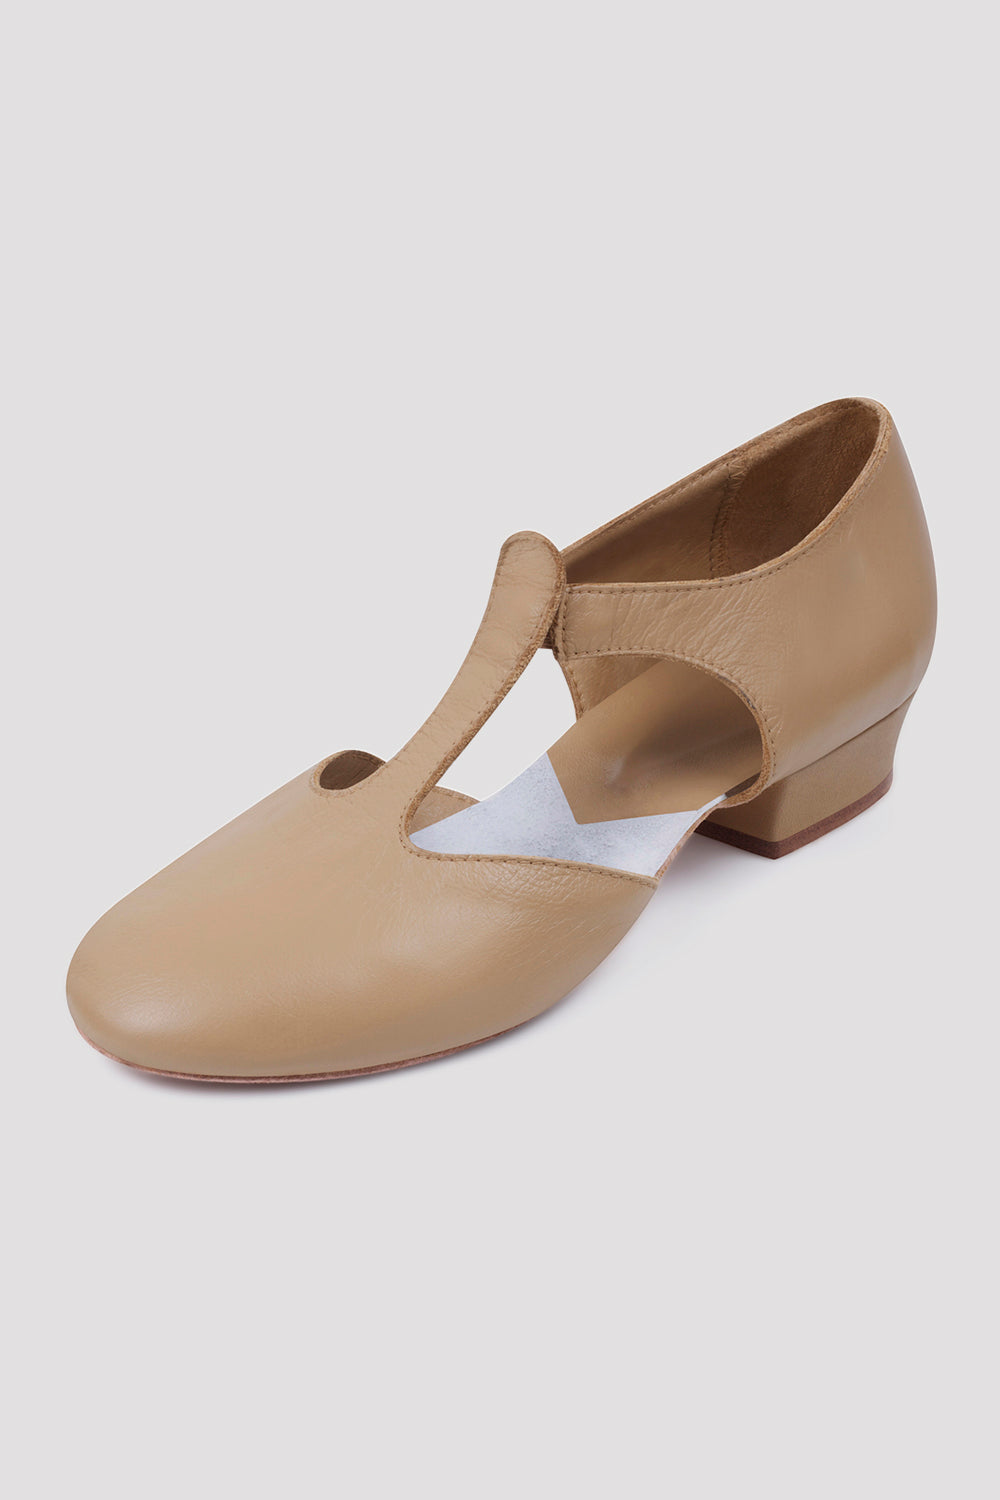 Grecian Sandal Teaching Shoe